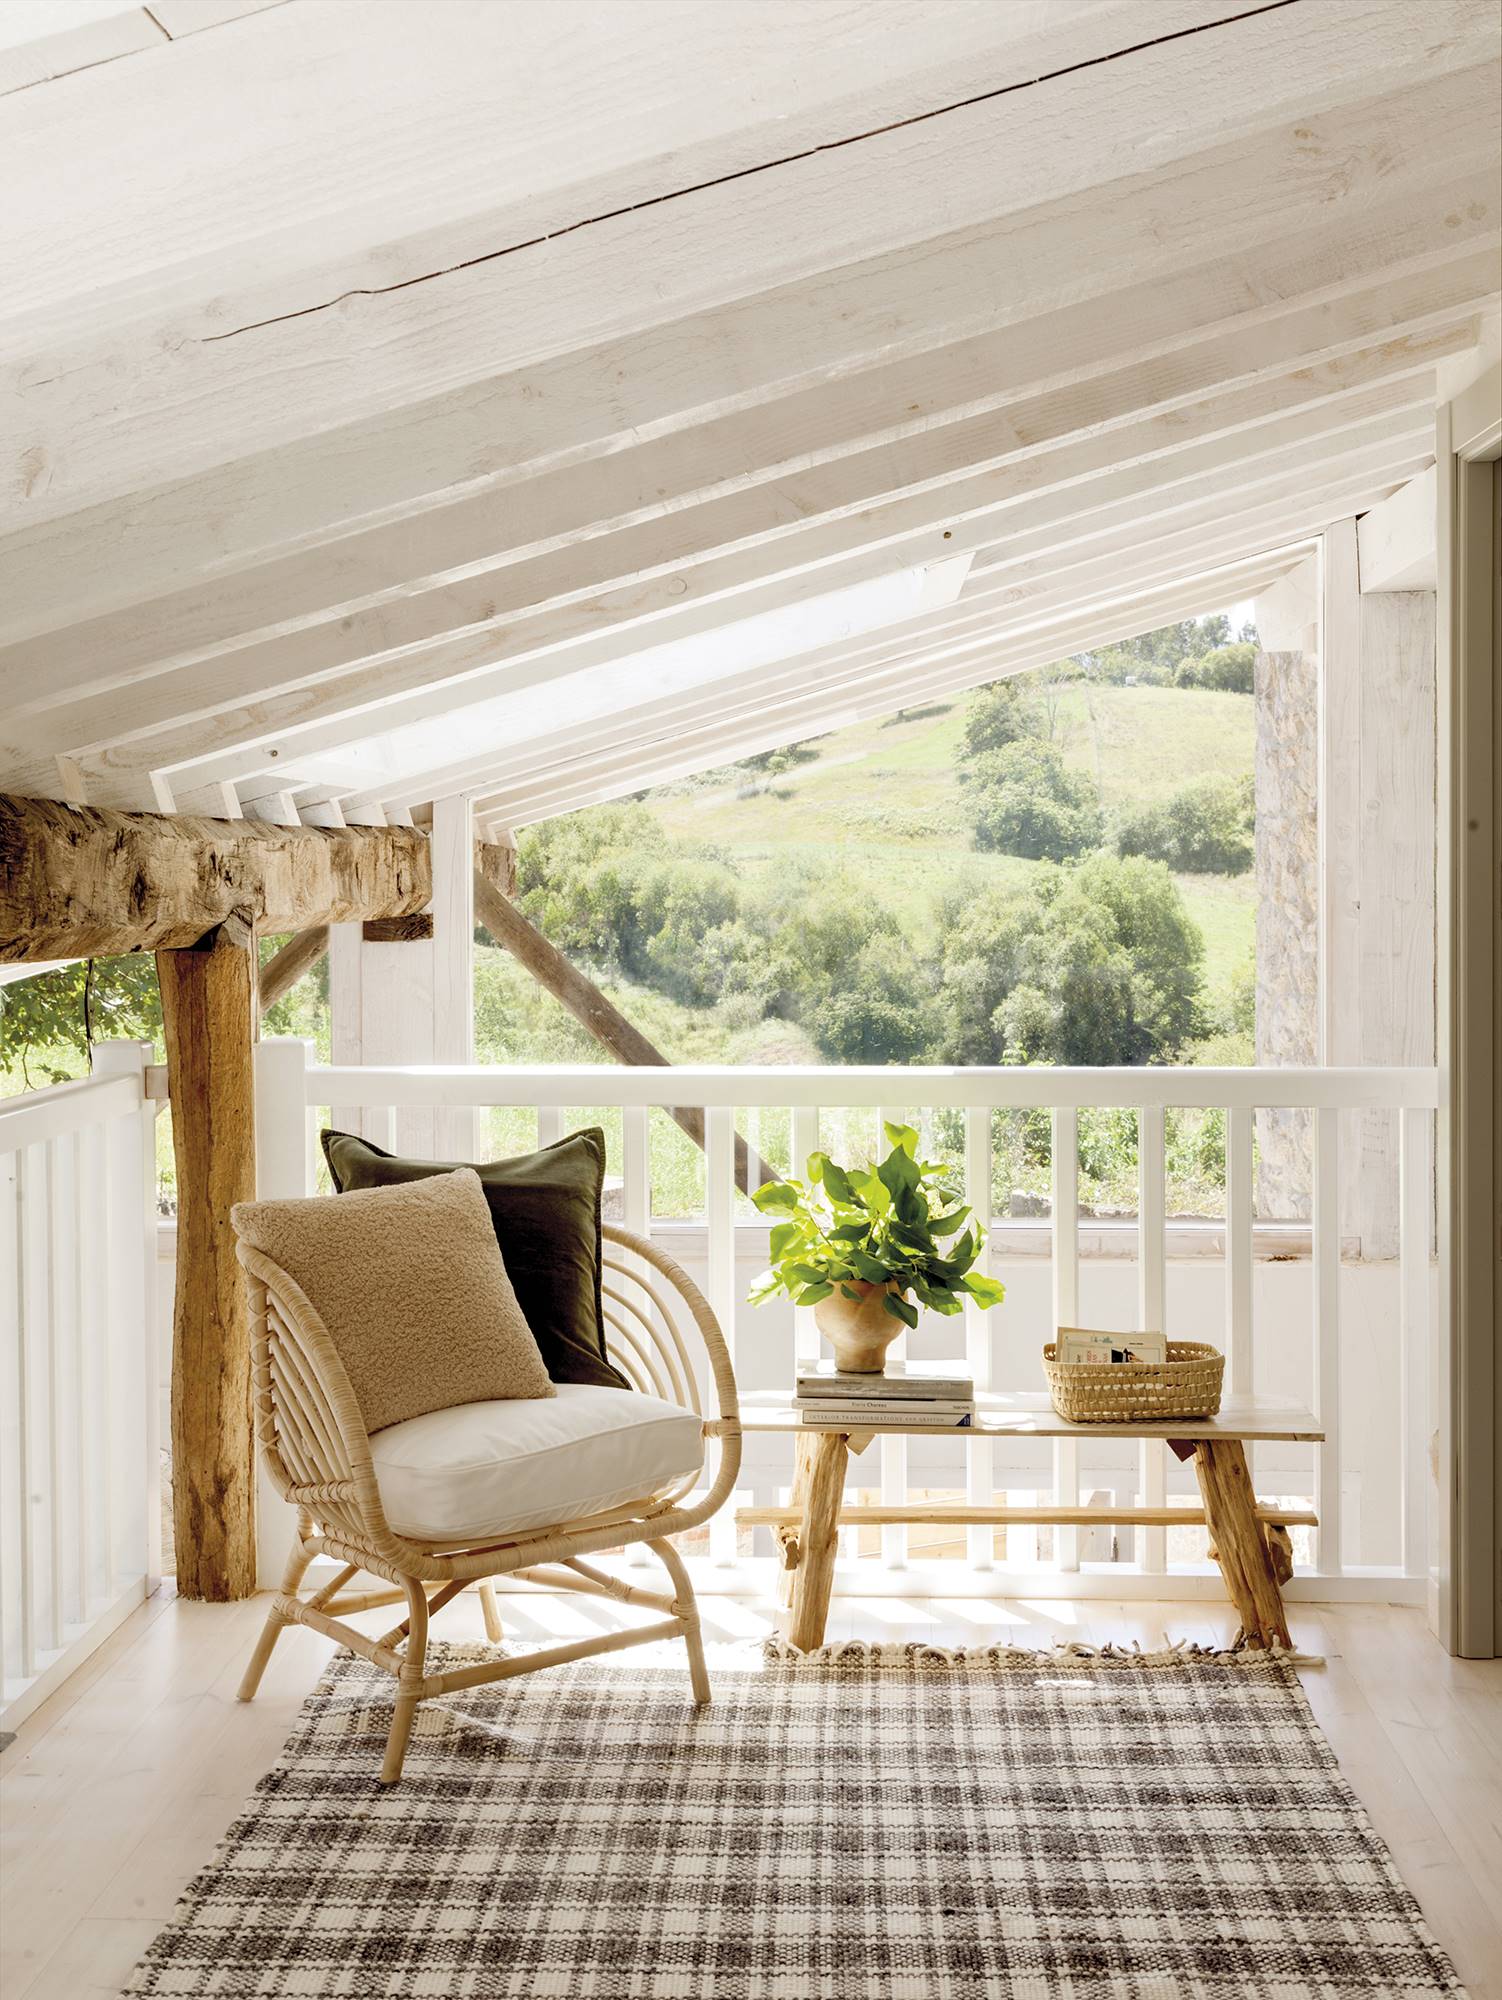 Terraza de estilo rústico con sillón y alfombra. 